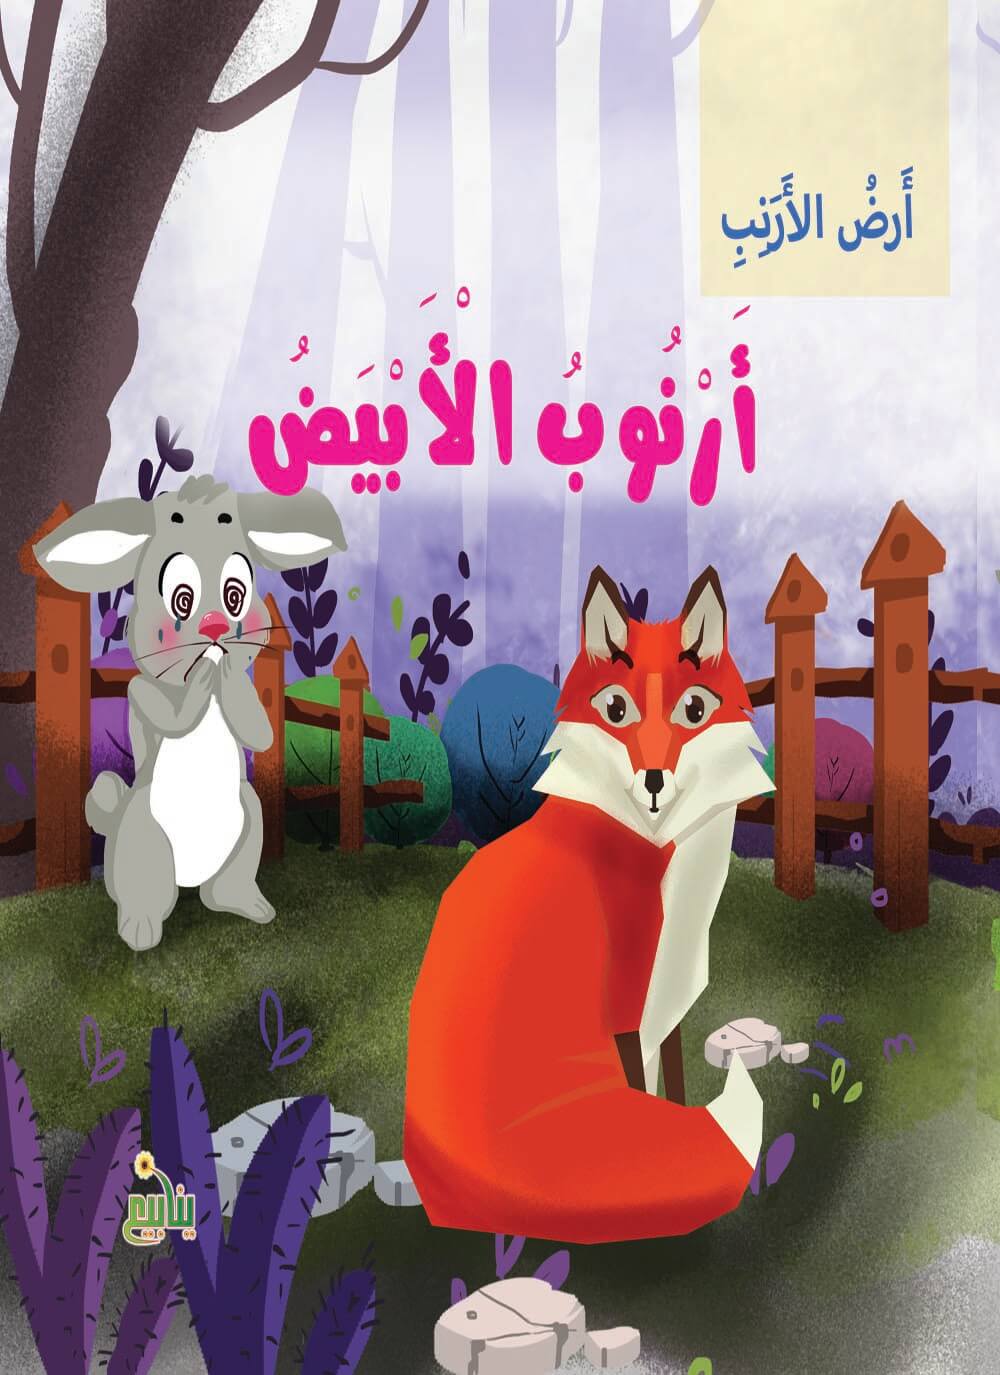 سلسلة أرض الأرانب كتب أطفال شركة ينابيع للنشر والتوزيع